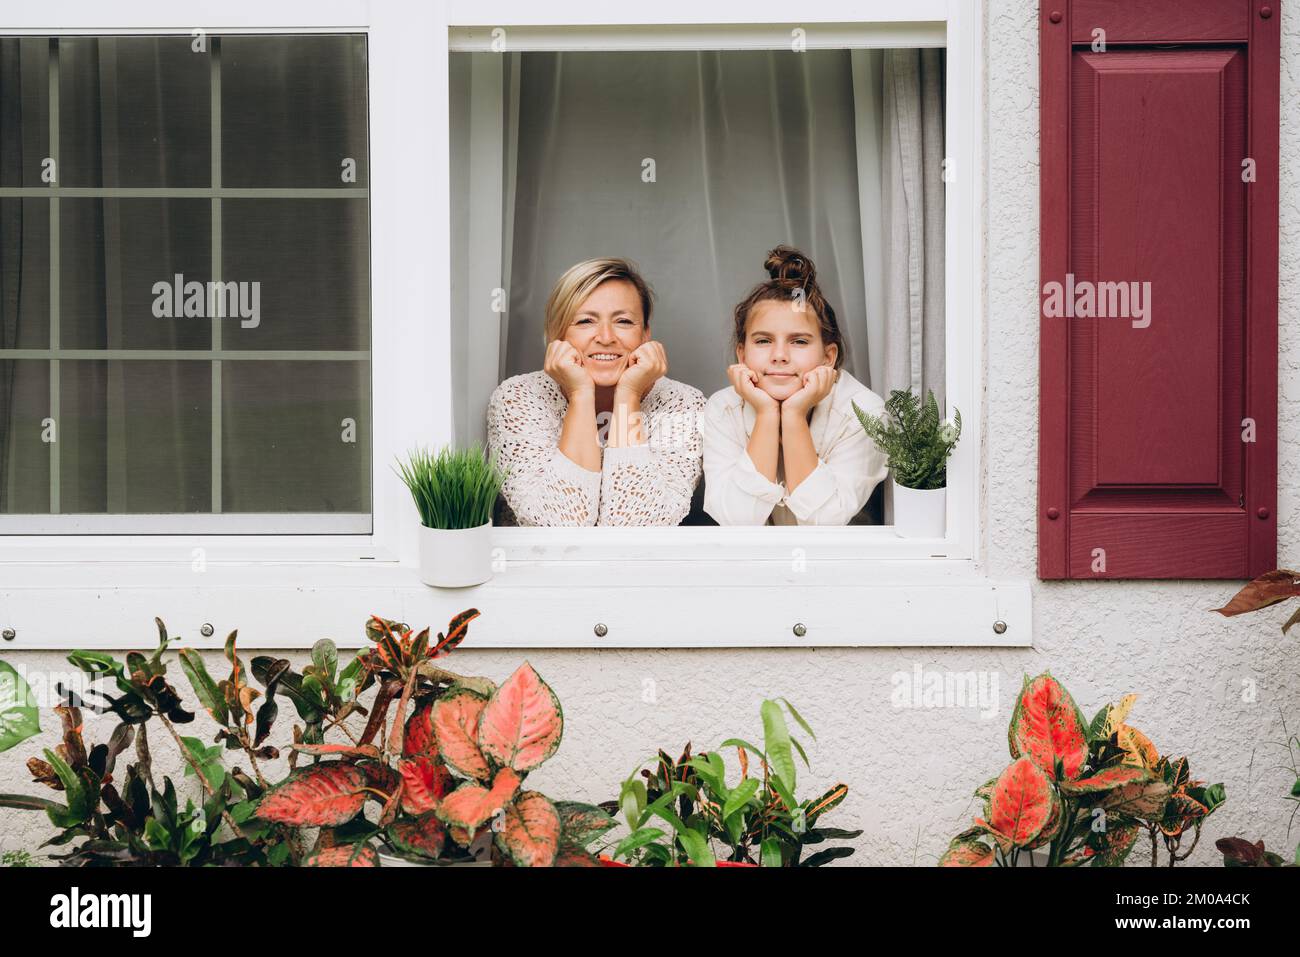 Mère et fille souriantes dans la fenêtre donnant sur le jardin Banque D'Images